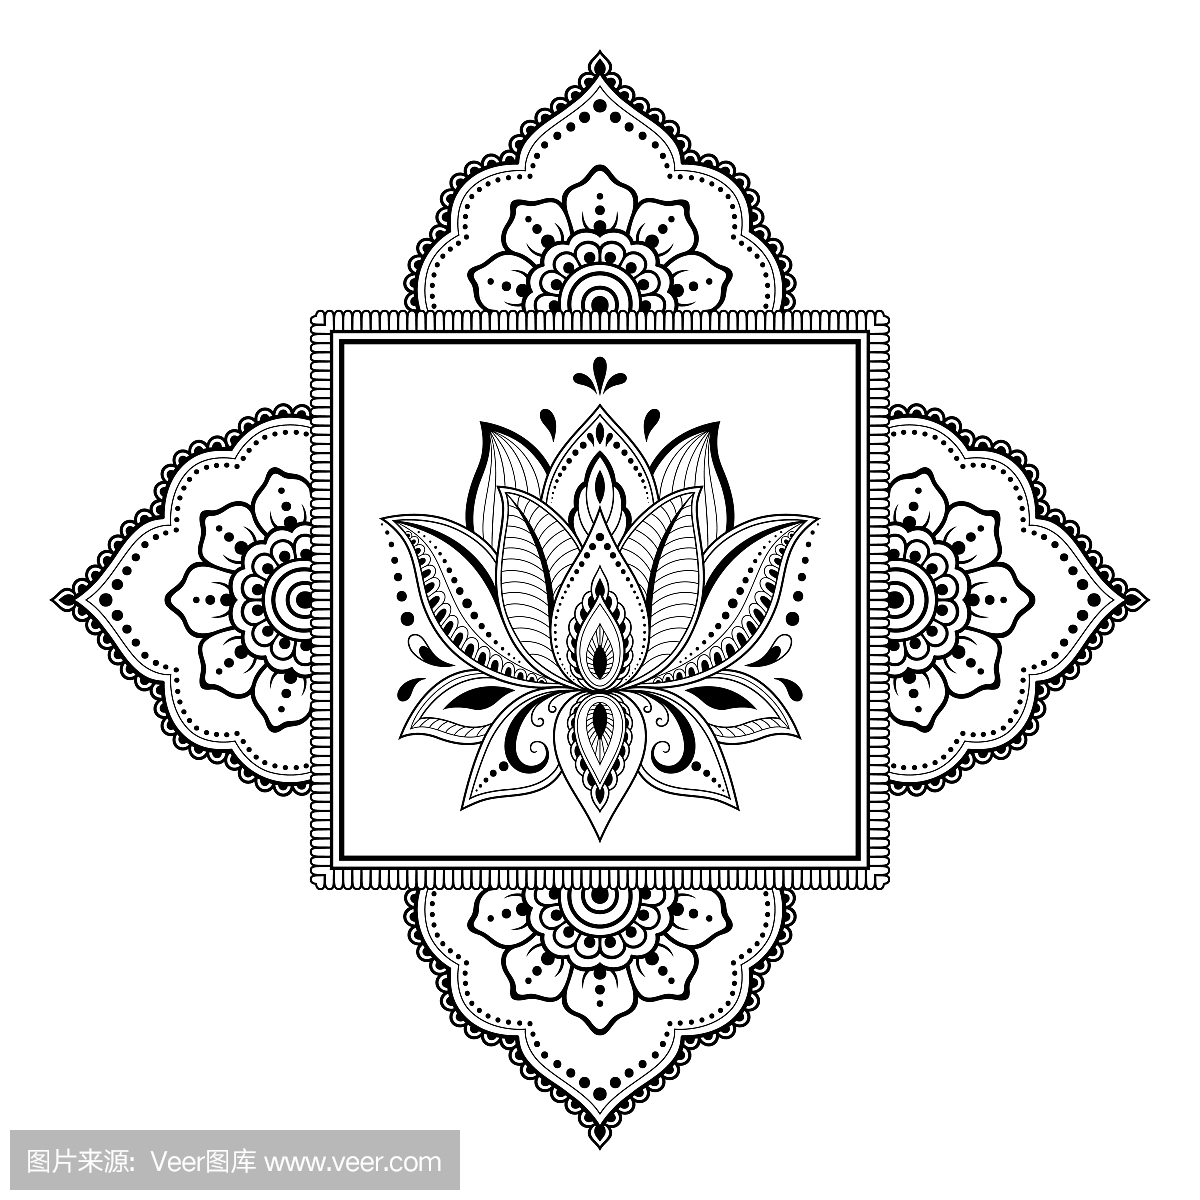 圆形图案为曼陀罗形式的指甲花,曼海蒂,纹身,装